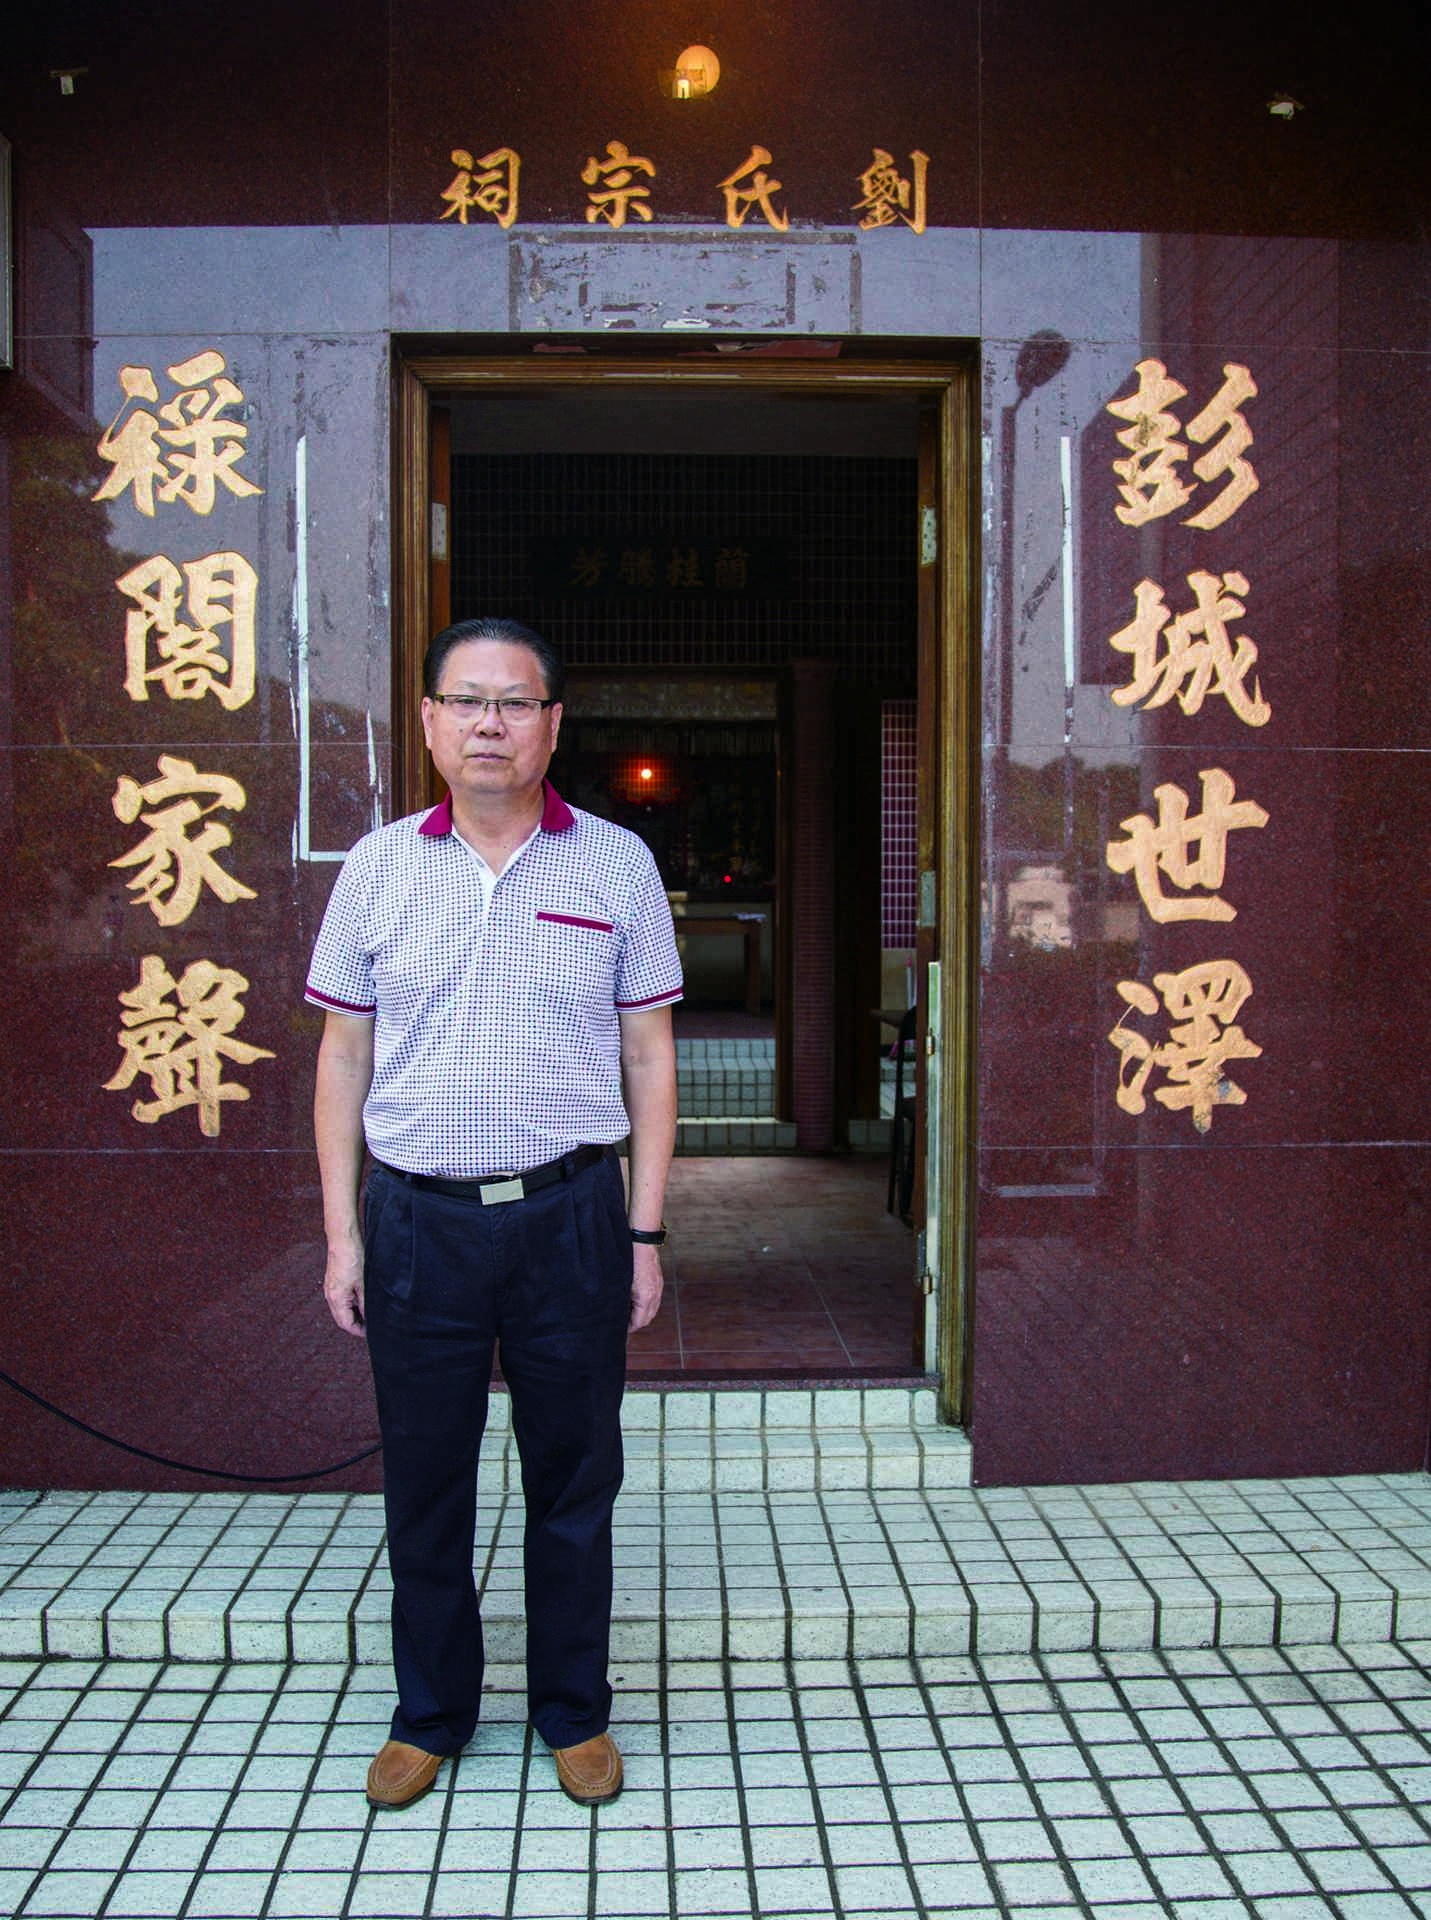 下洋村居民代表劉錦昌先生。